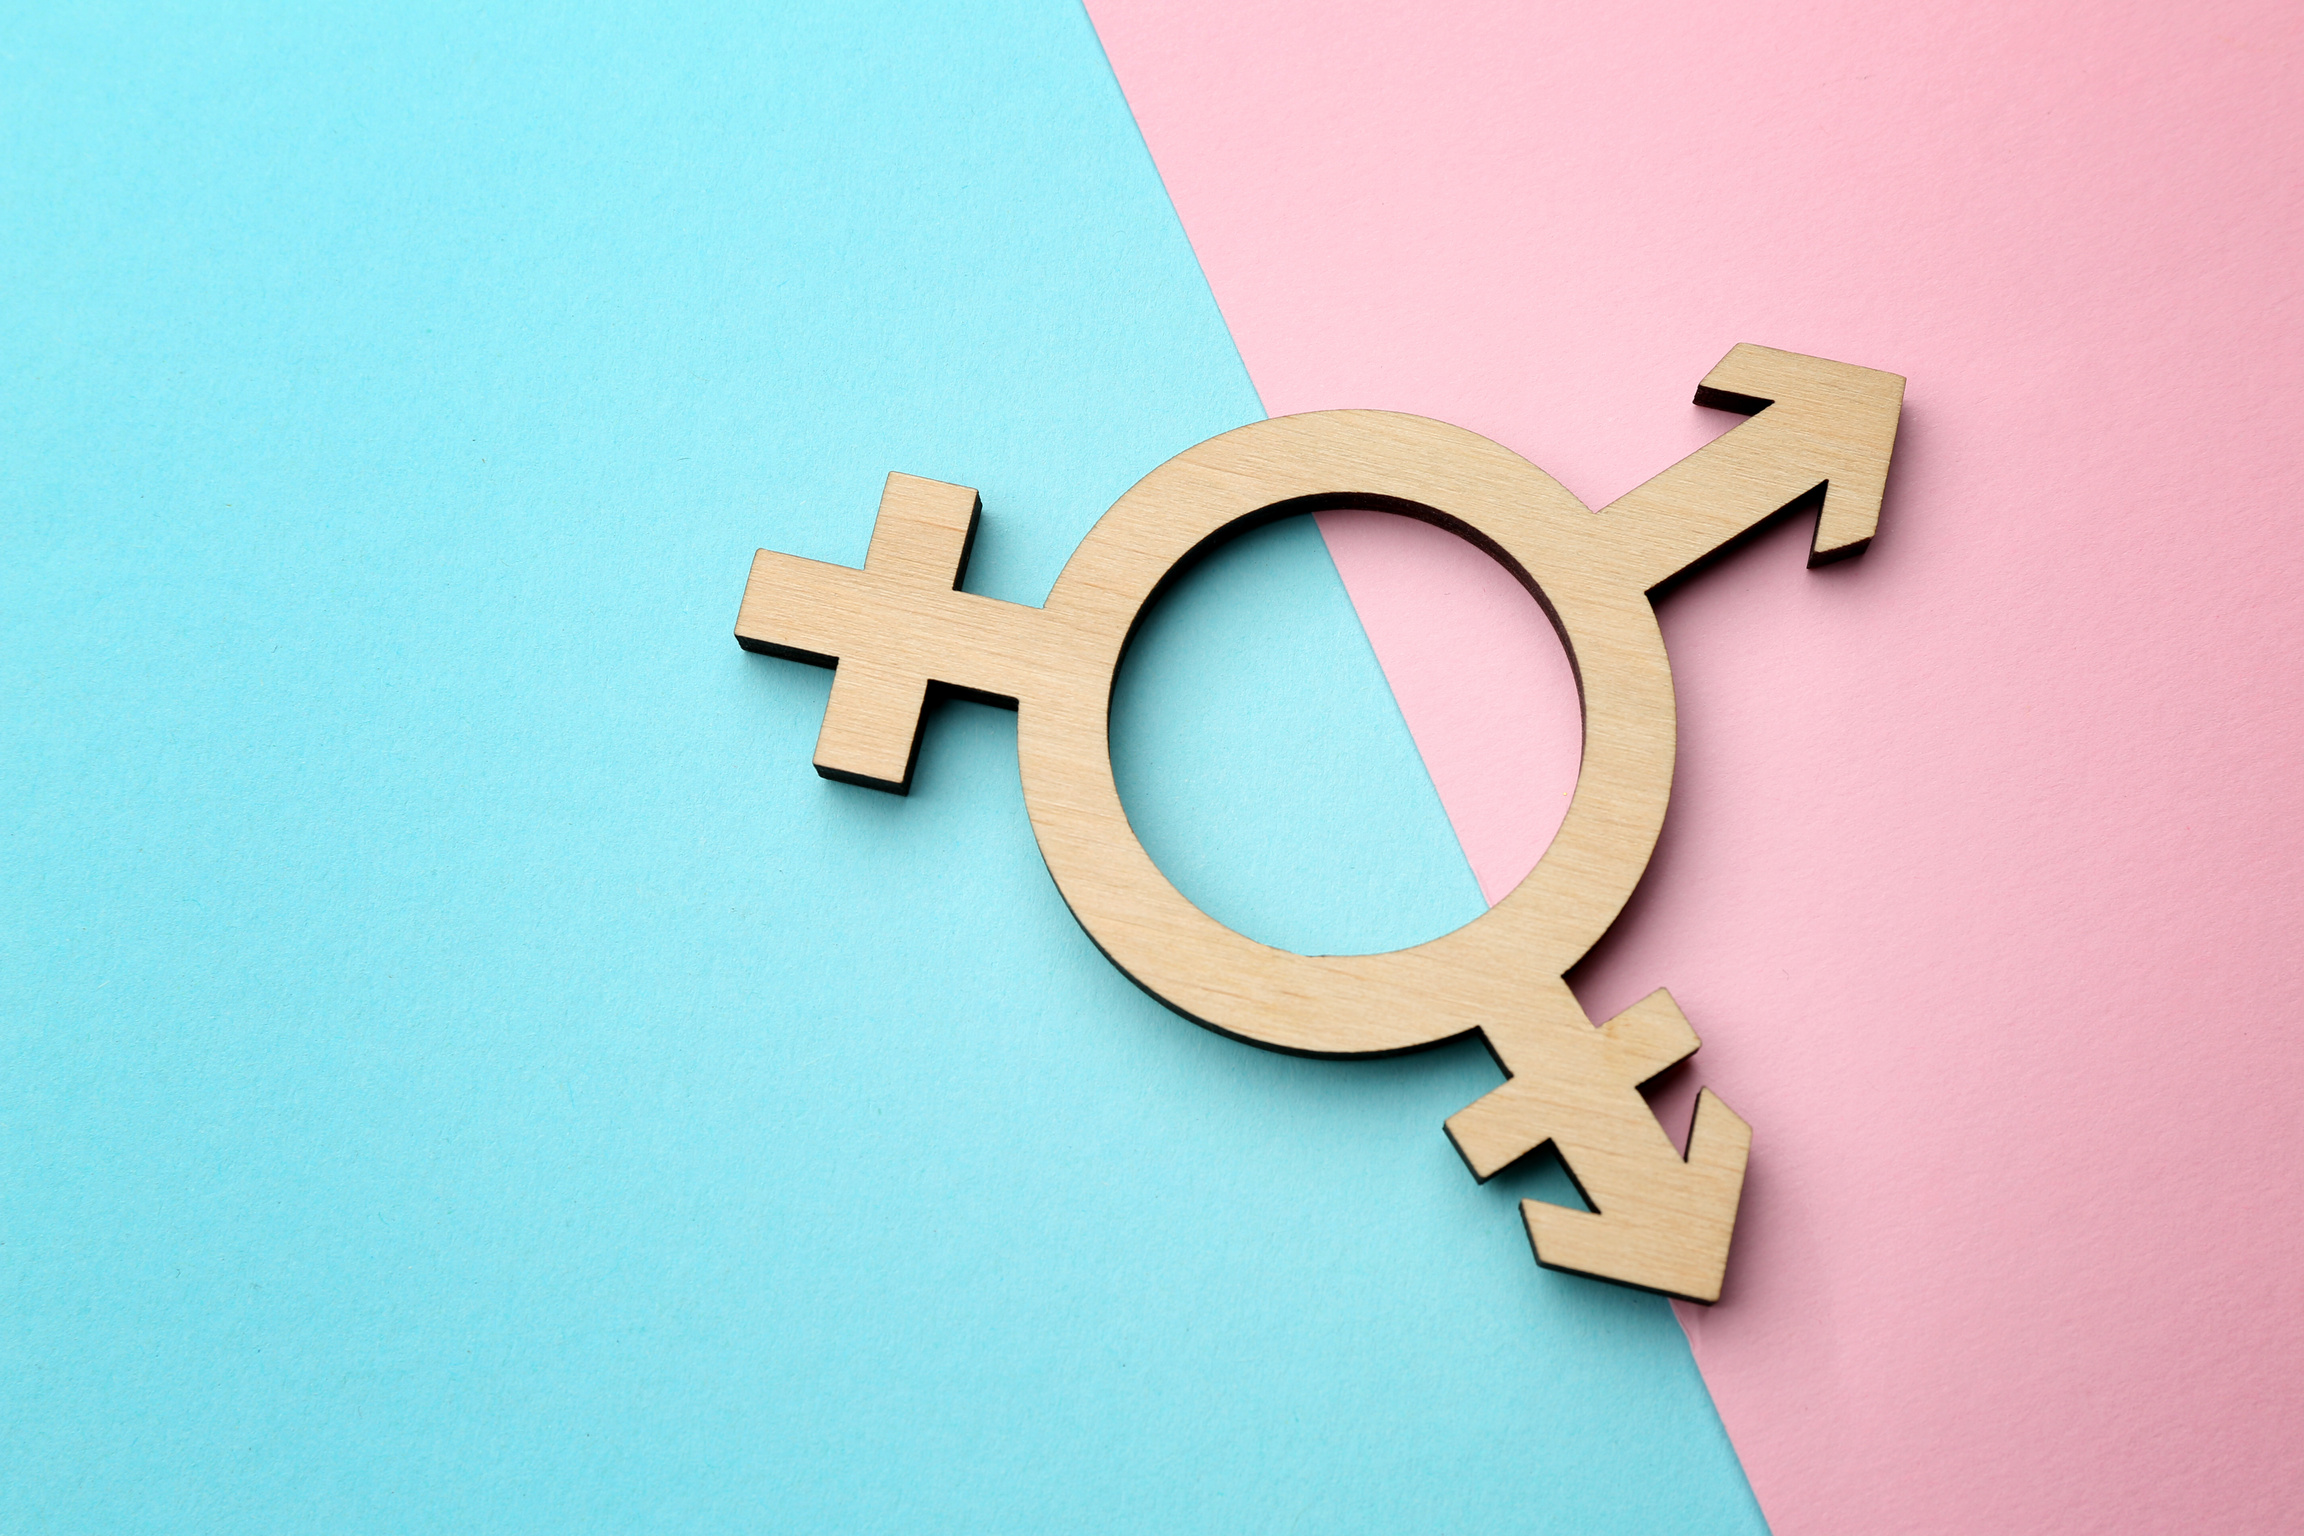 Transgender Symbol on Blue and Pink Background